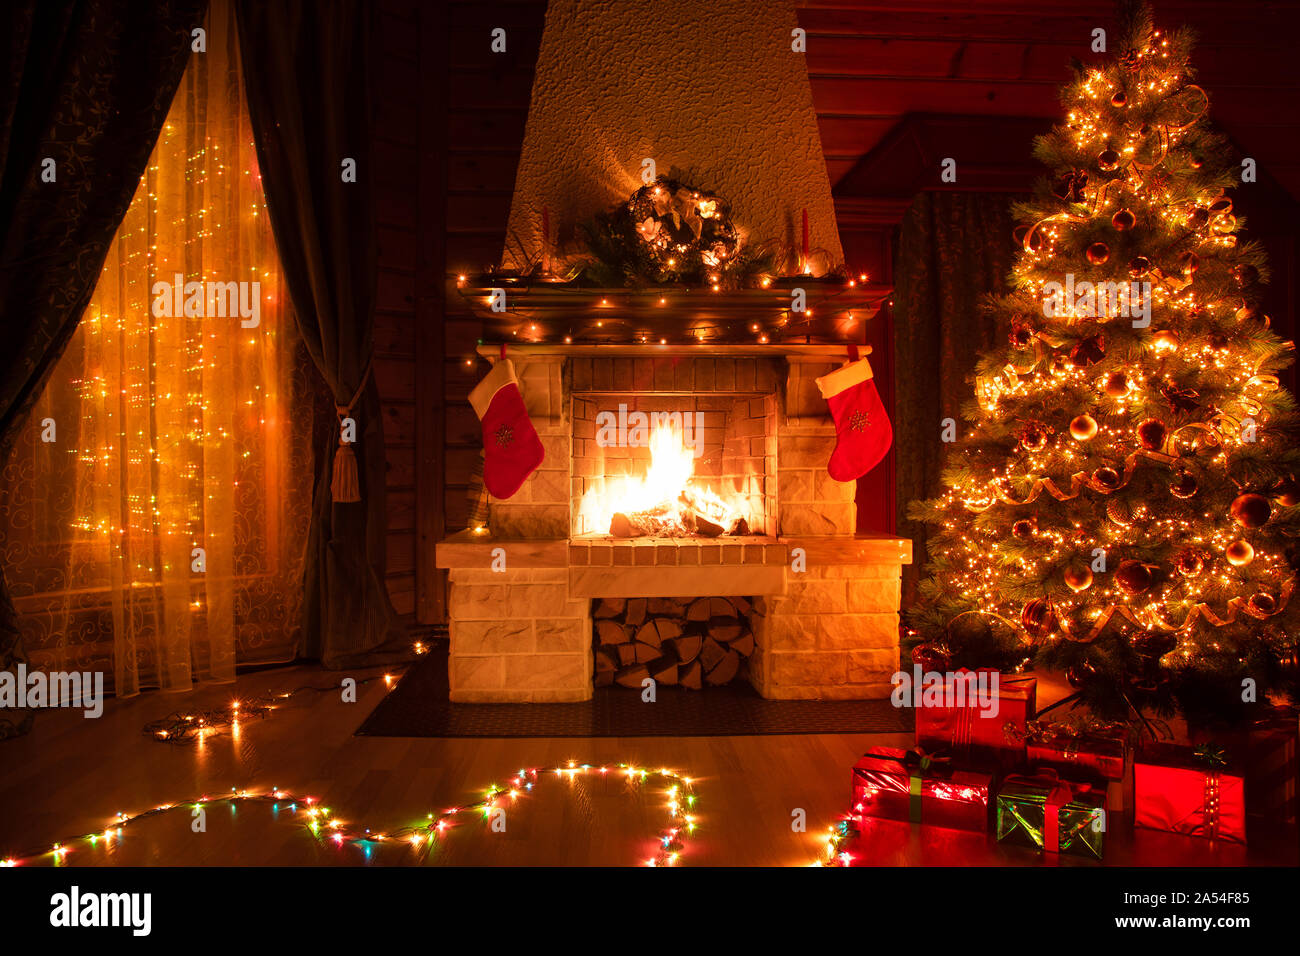 Navidad decorado salón interior con chimenea, un sillón, la ventana y el arbol de navidad Foto de stock